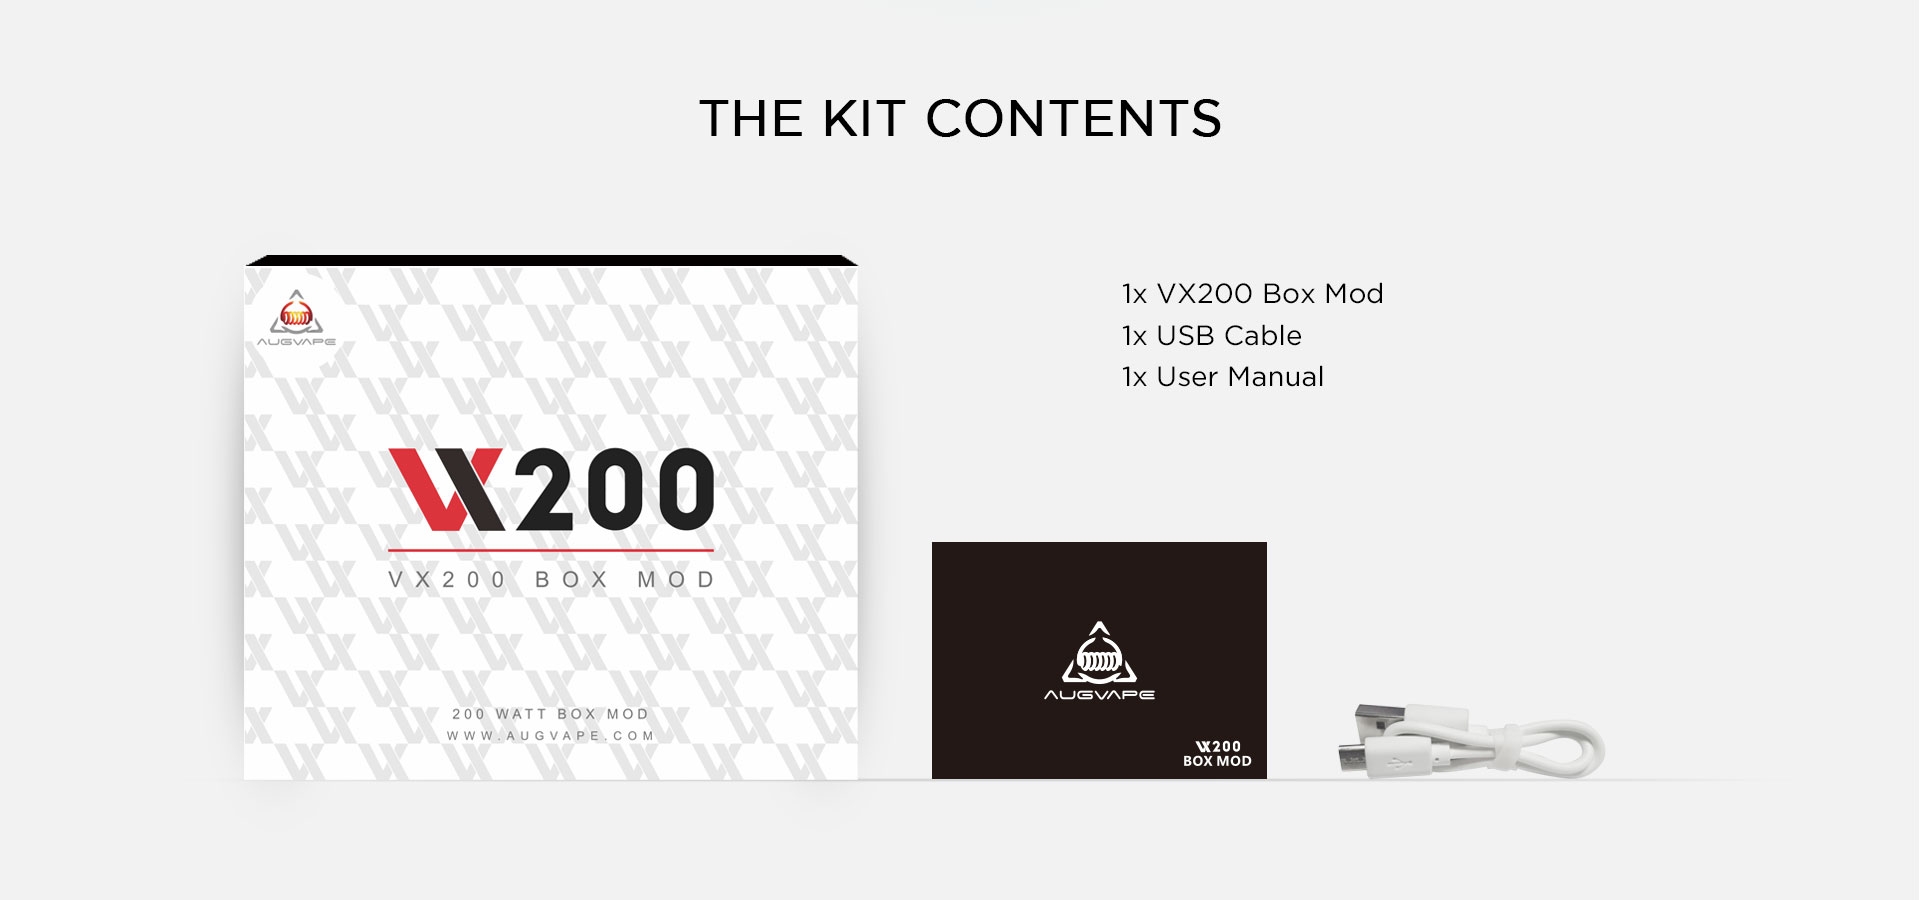 VX200 Box Mod Package